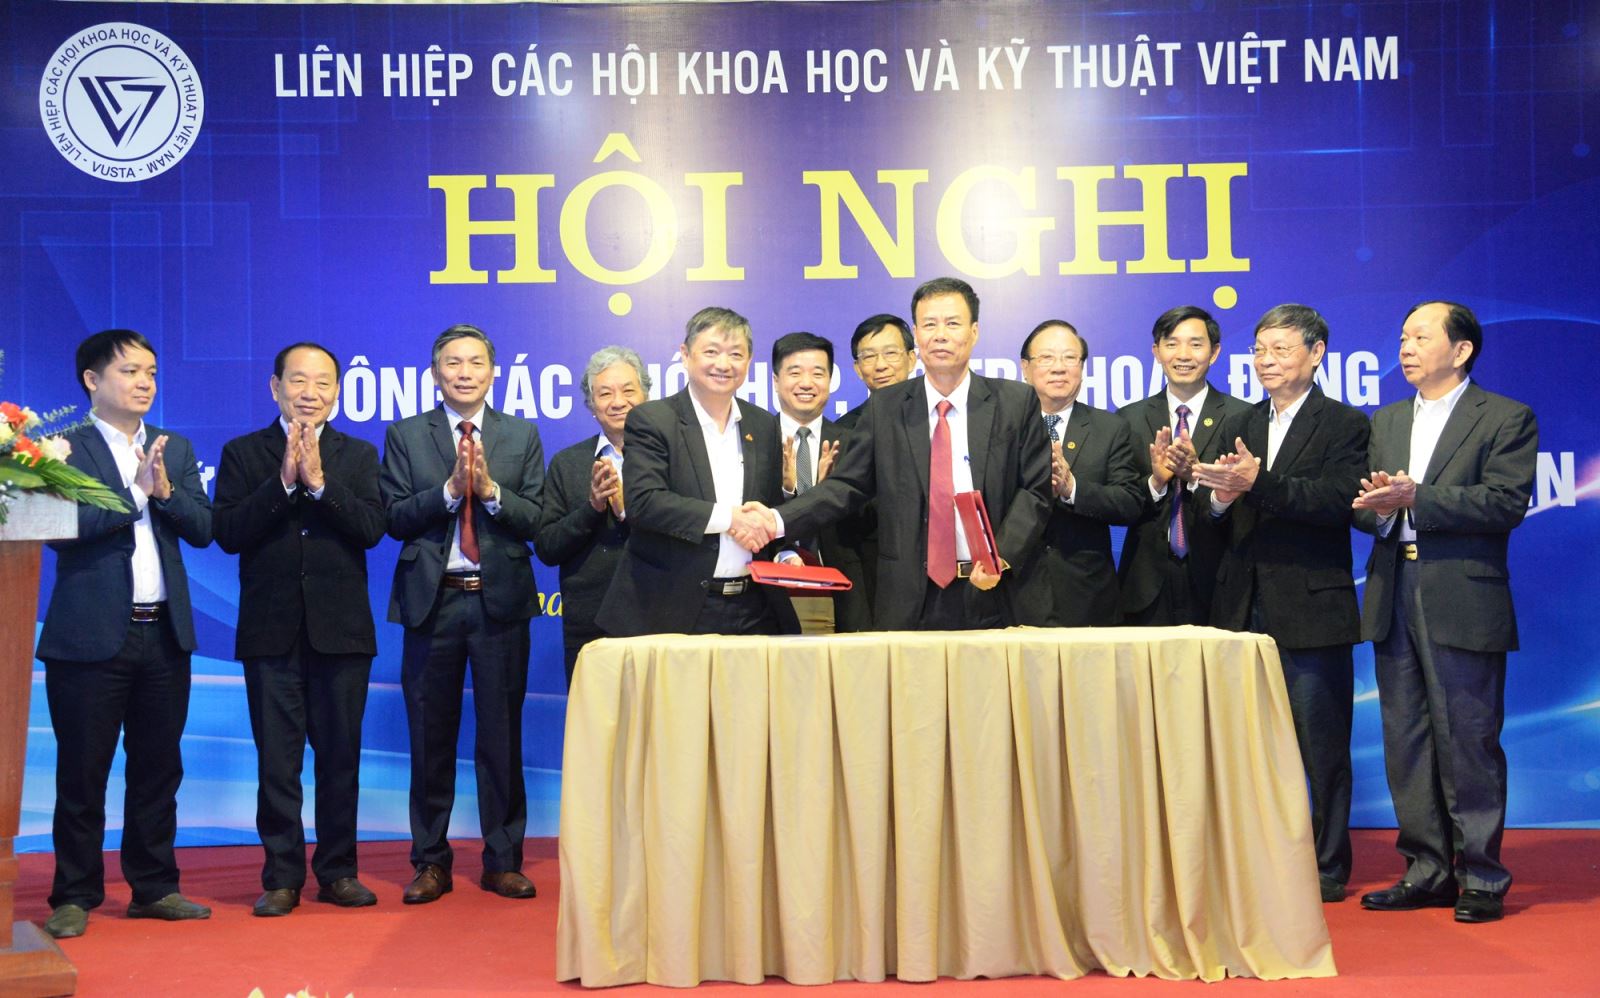 Tổng hội Xây dựng Việt Nam ký kết hợp tác với Liên hiệp các hội khoa học và kỹ thuật tỉnh Vĩnh Phúc - Ảnh 2